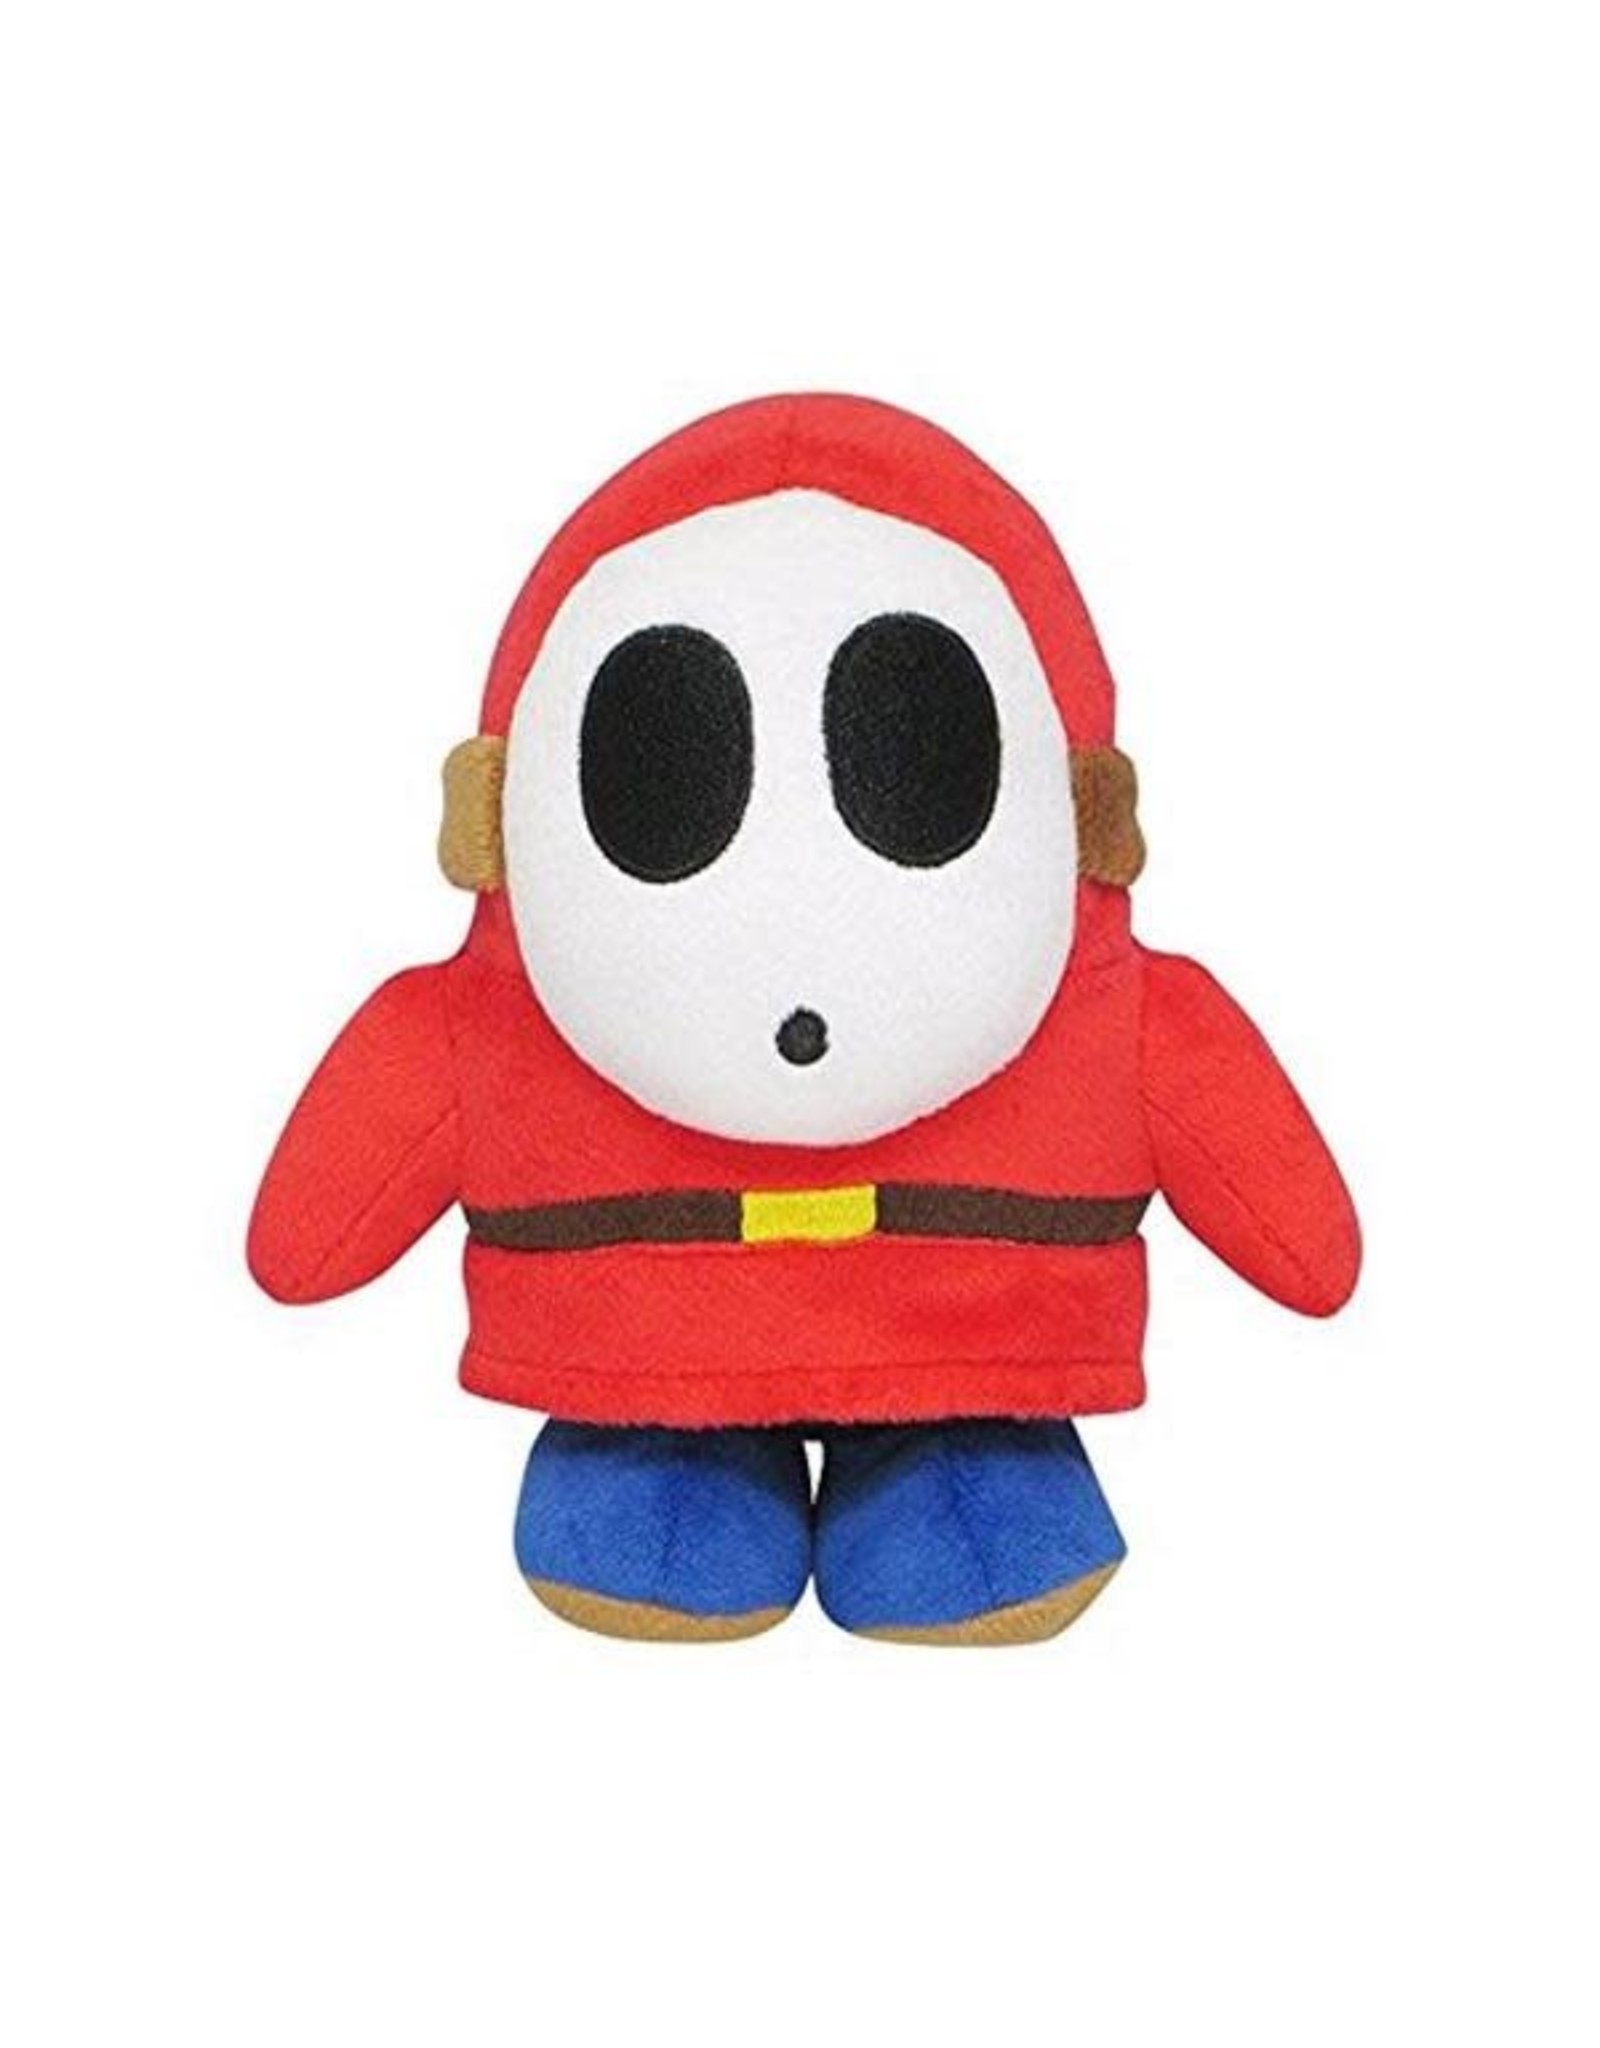 Little Buddy Little Buddy - Super Mario Bros - Shy Guy - 7" Plush